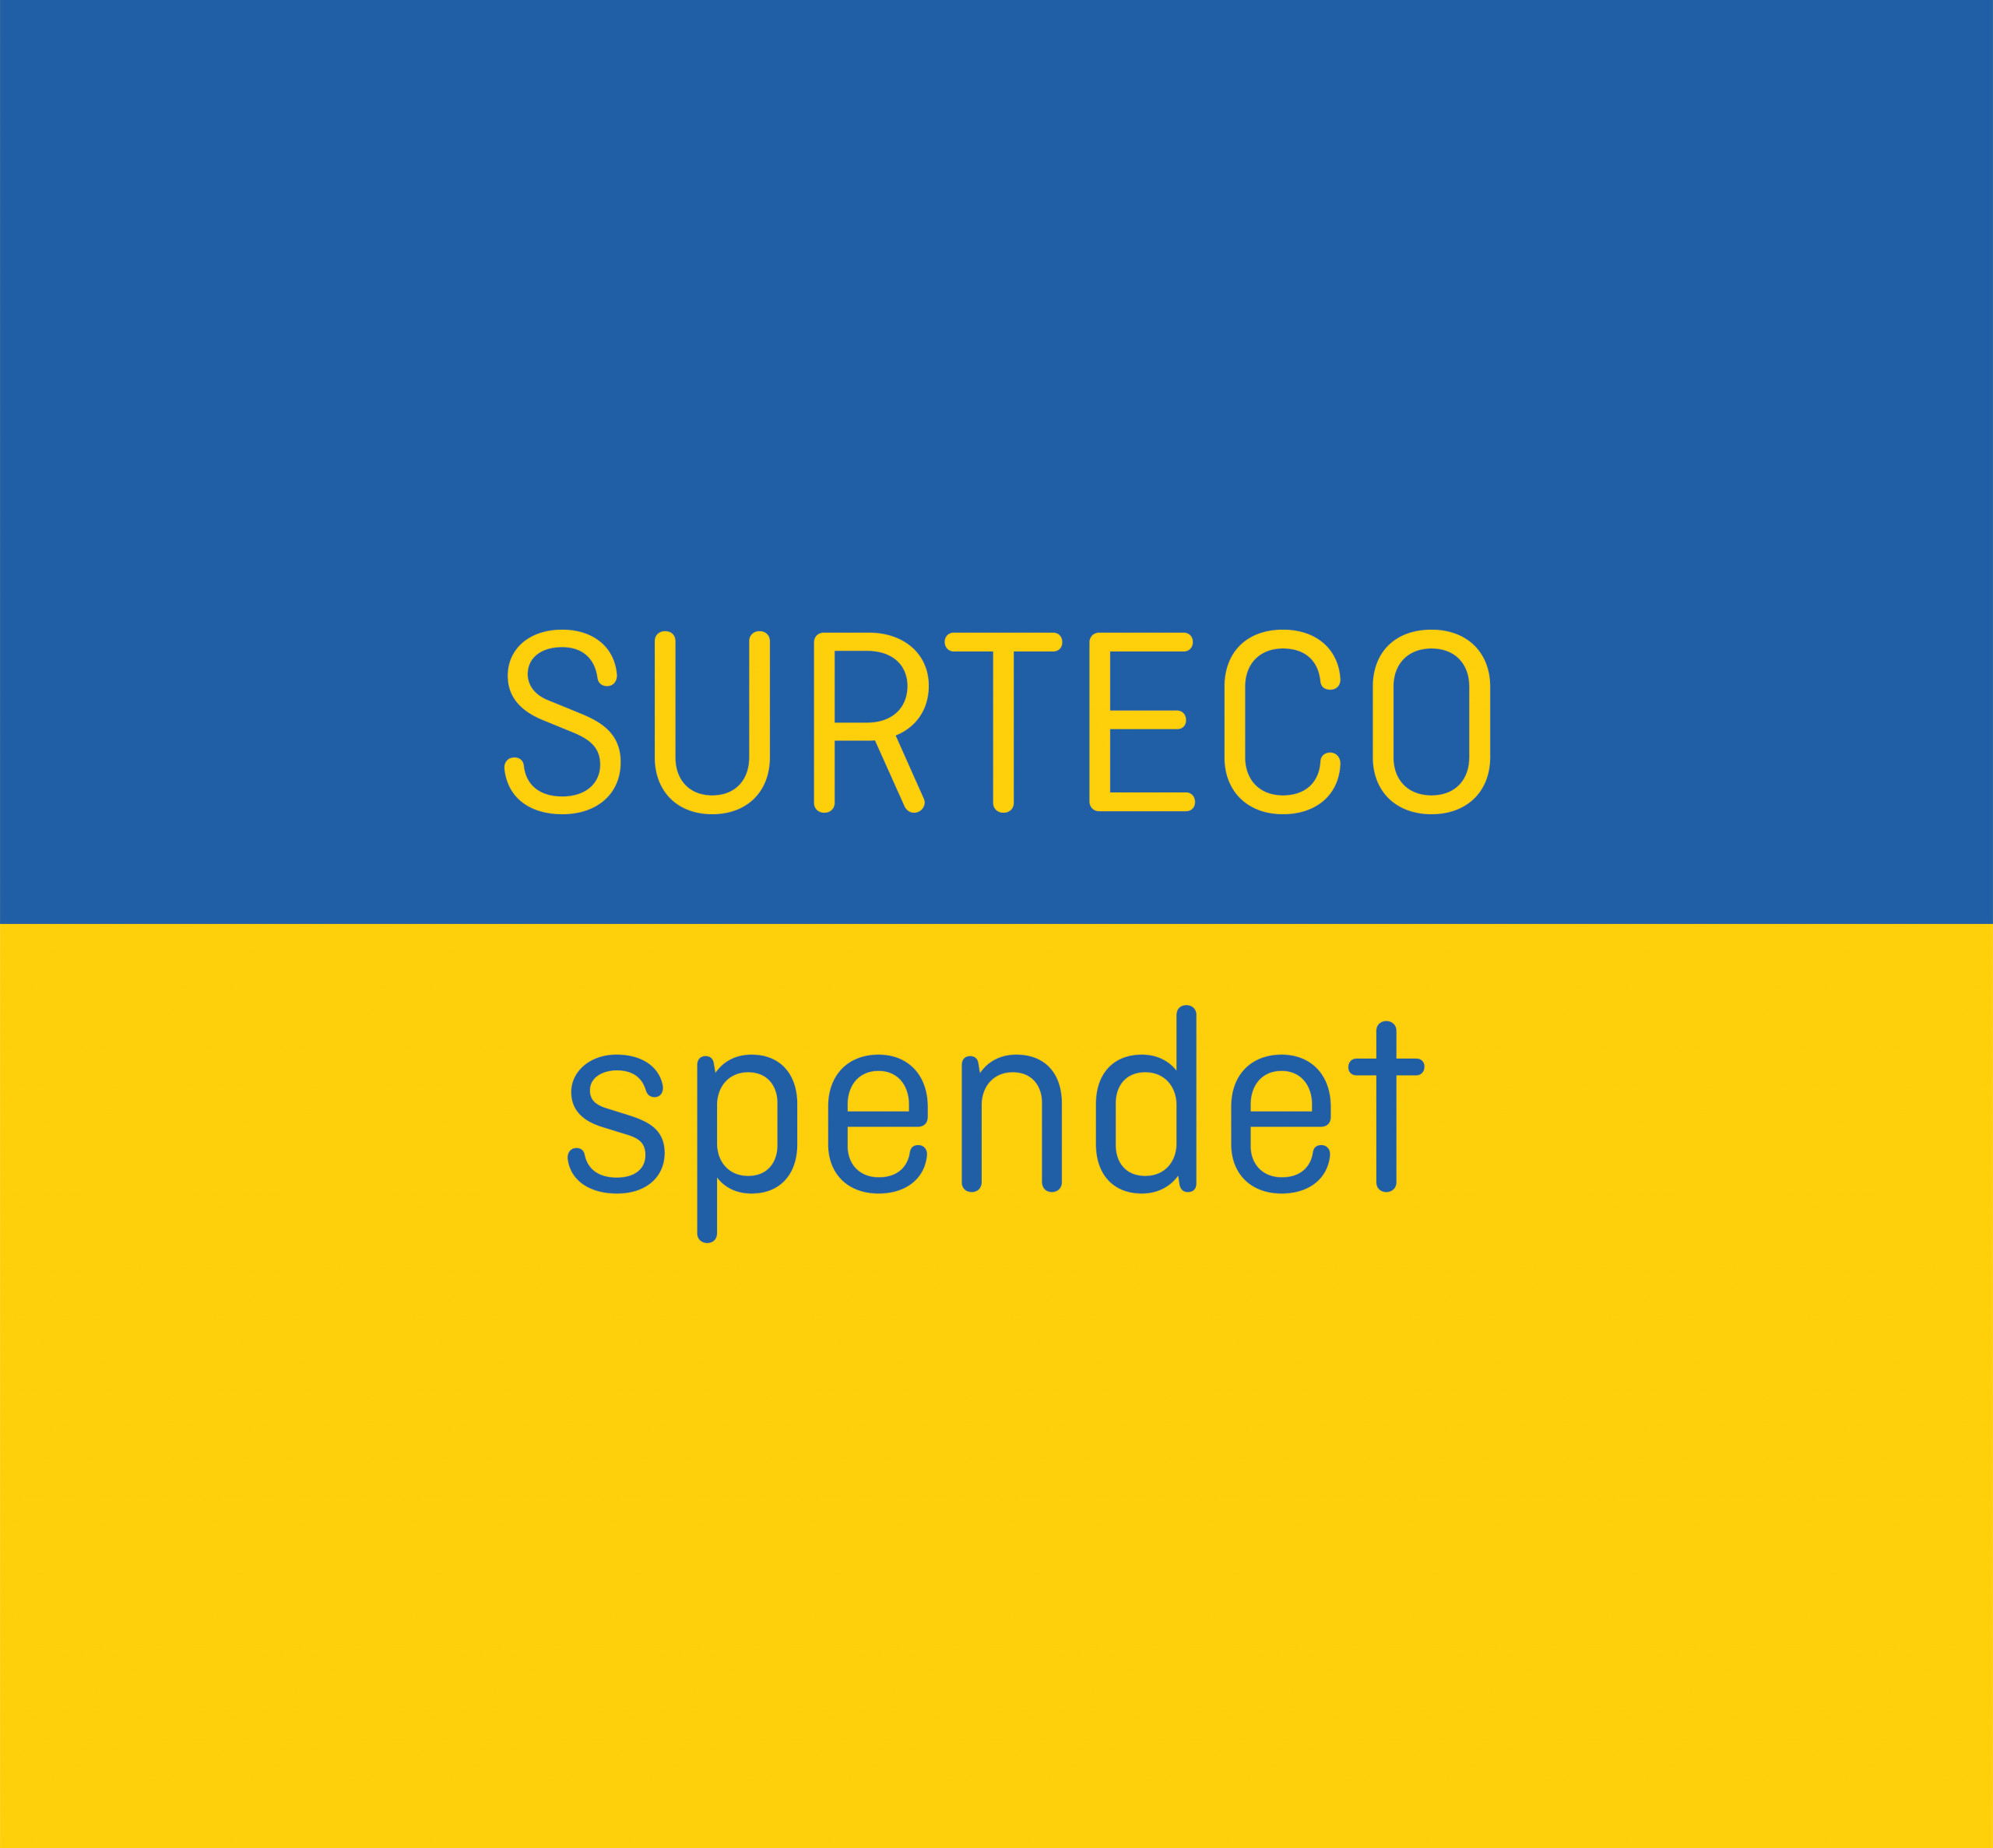 SURTECO spendet für das Ukrainische Volk